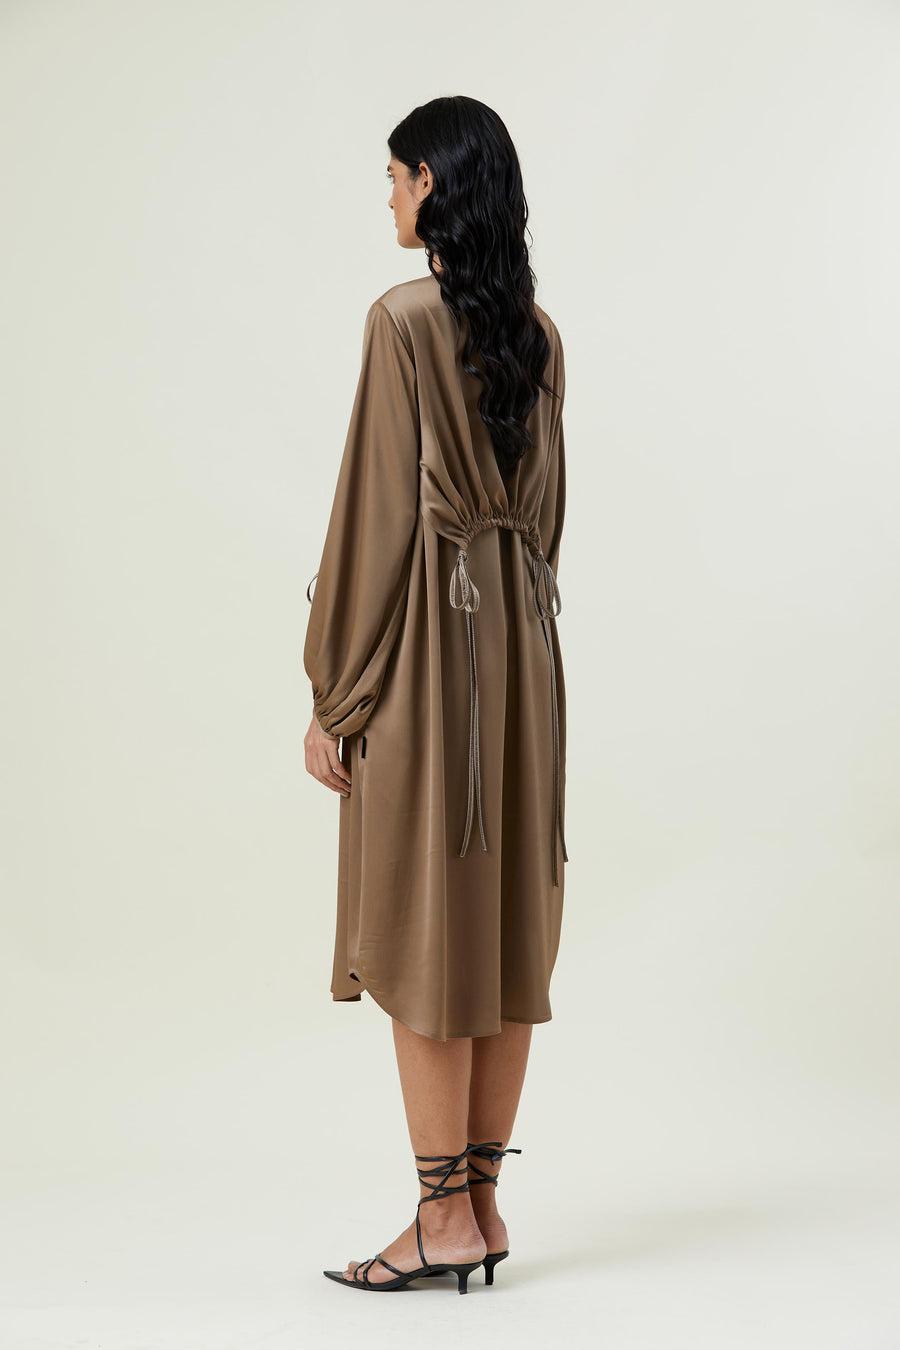 ‘AYLA’ OVERLAY EMBELLISHED DRESS - Kanika Goyal Label